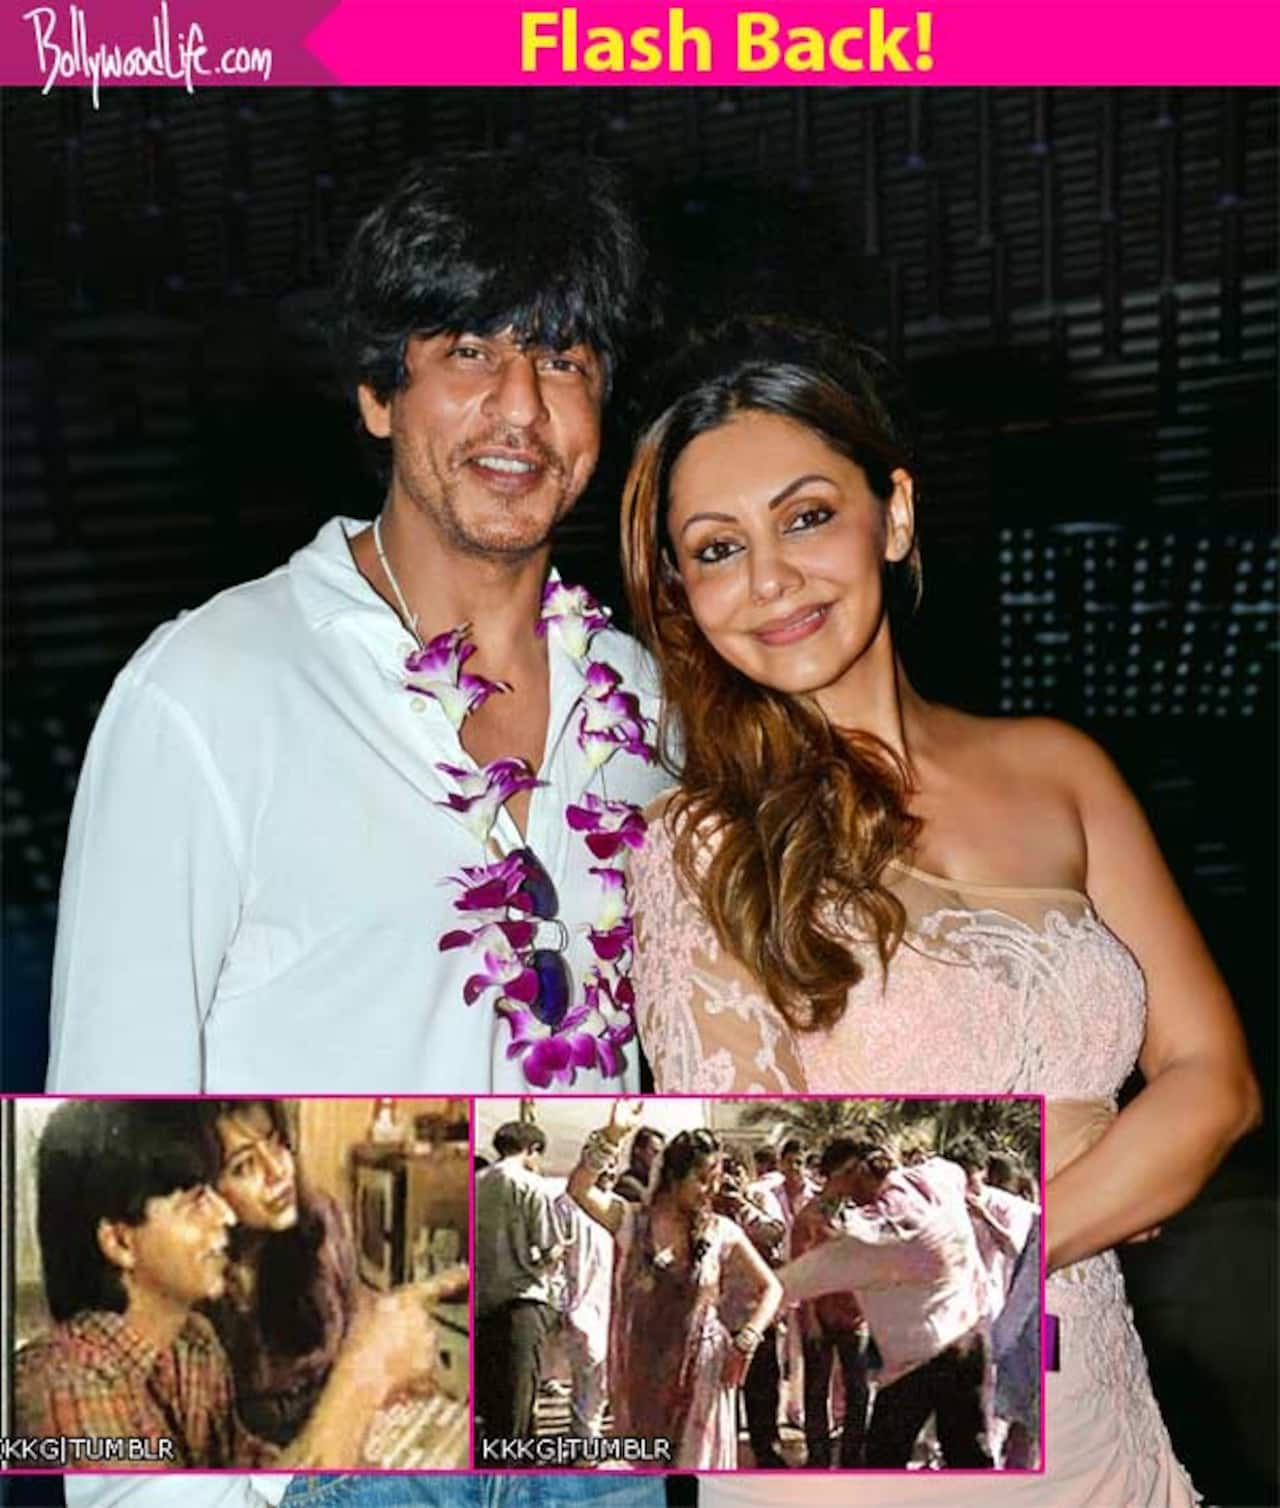 When Shah Rukh Khan and Gauri didn't CARE A DAMN about duniyawale to show their love!